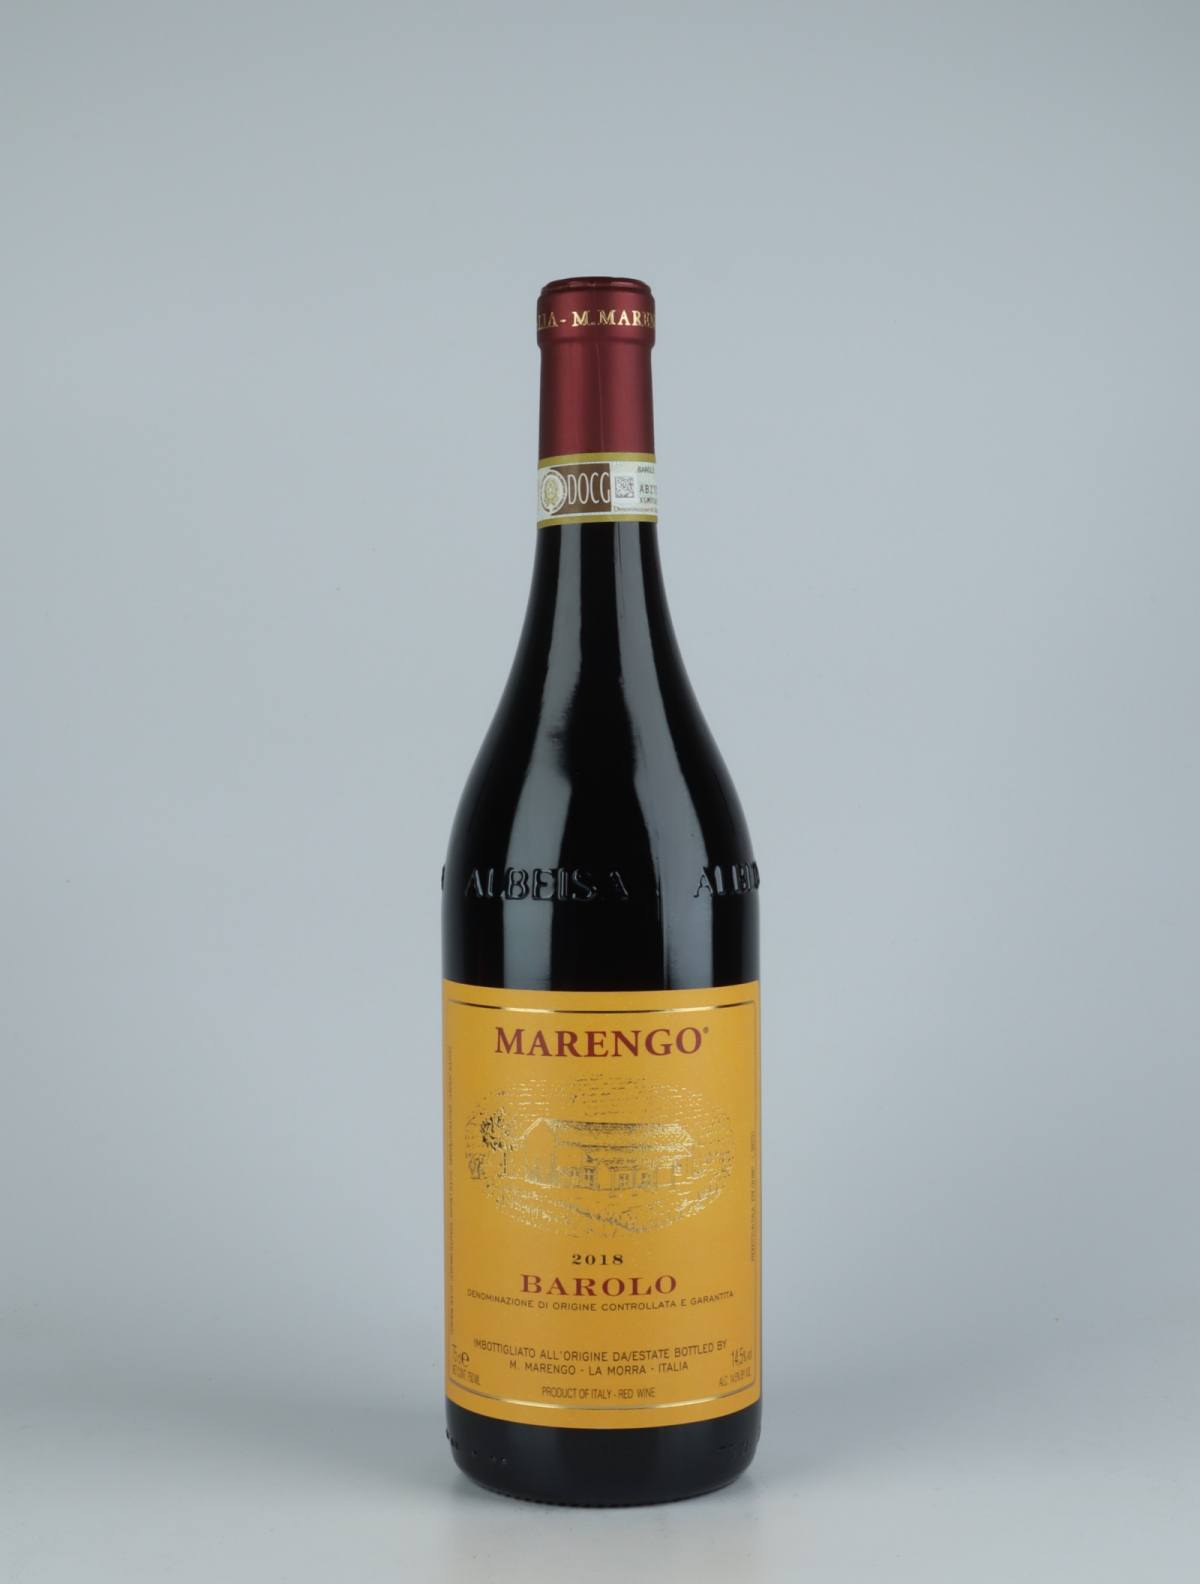 En flaske 2018 Barolo Rødvin fra Mario Marengo, Piemonte i Italien